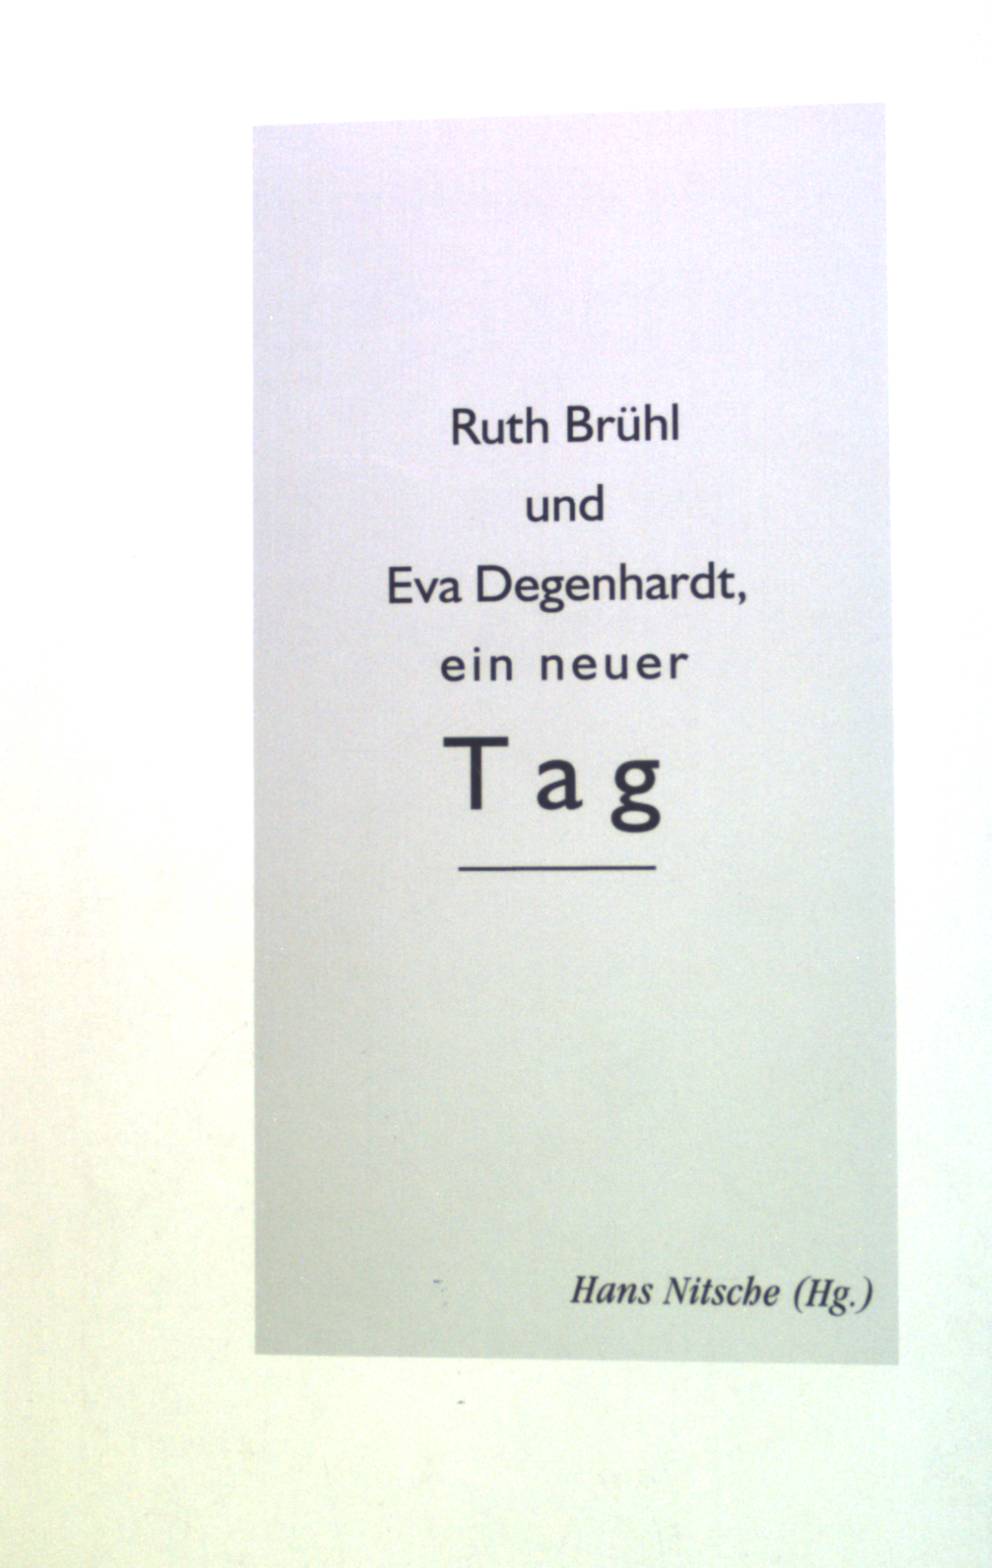 [Ein neuer Tag] ; Ruth Brühl und Eva Degenhardt, ein neuer Tag : Gedichte, Gedanken, Bilder. - Brühl, Ruth und Eva Degenhardt